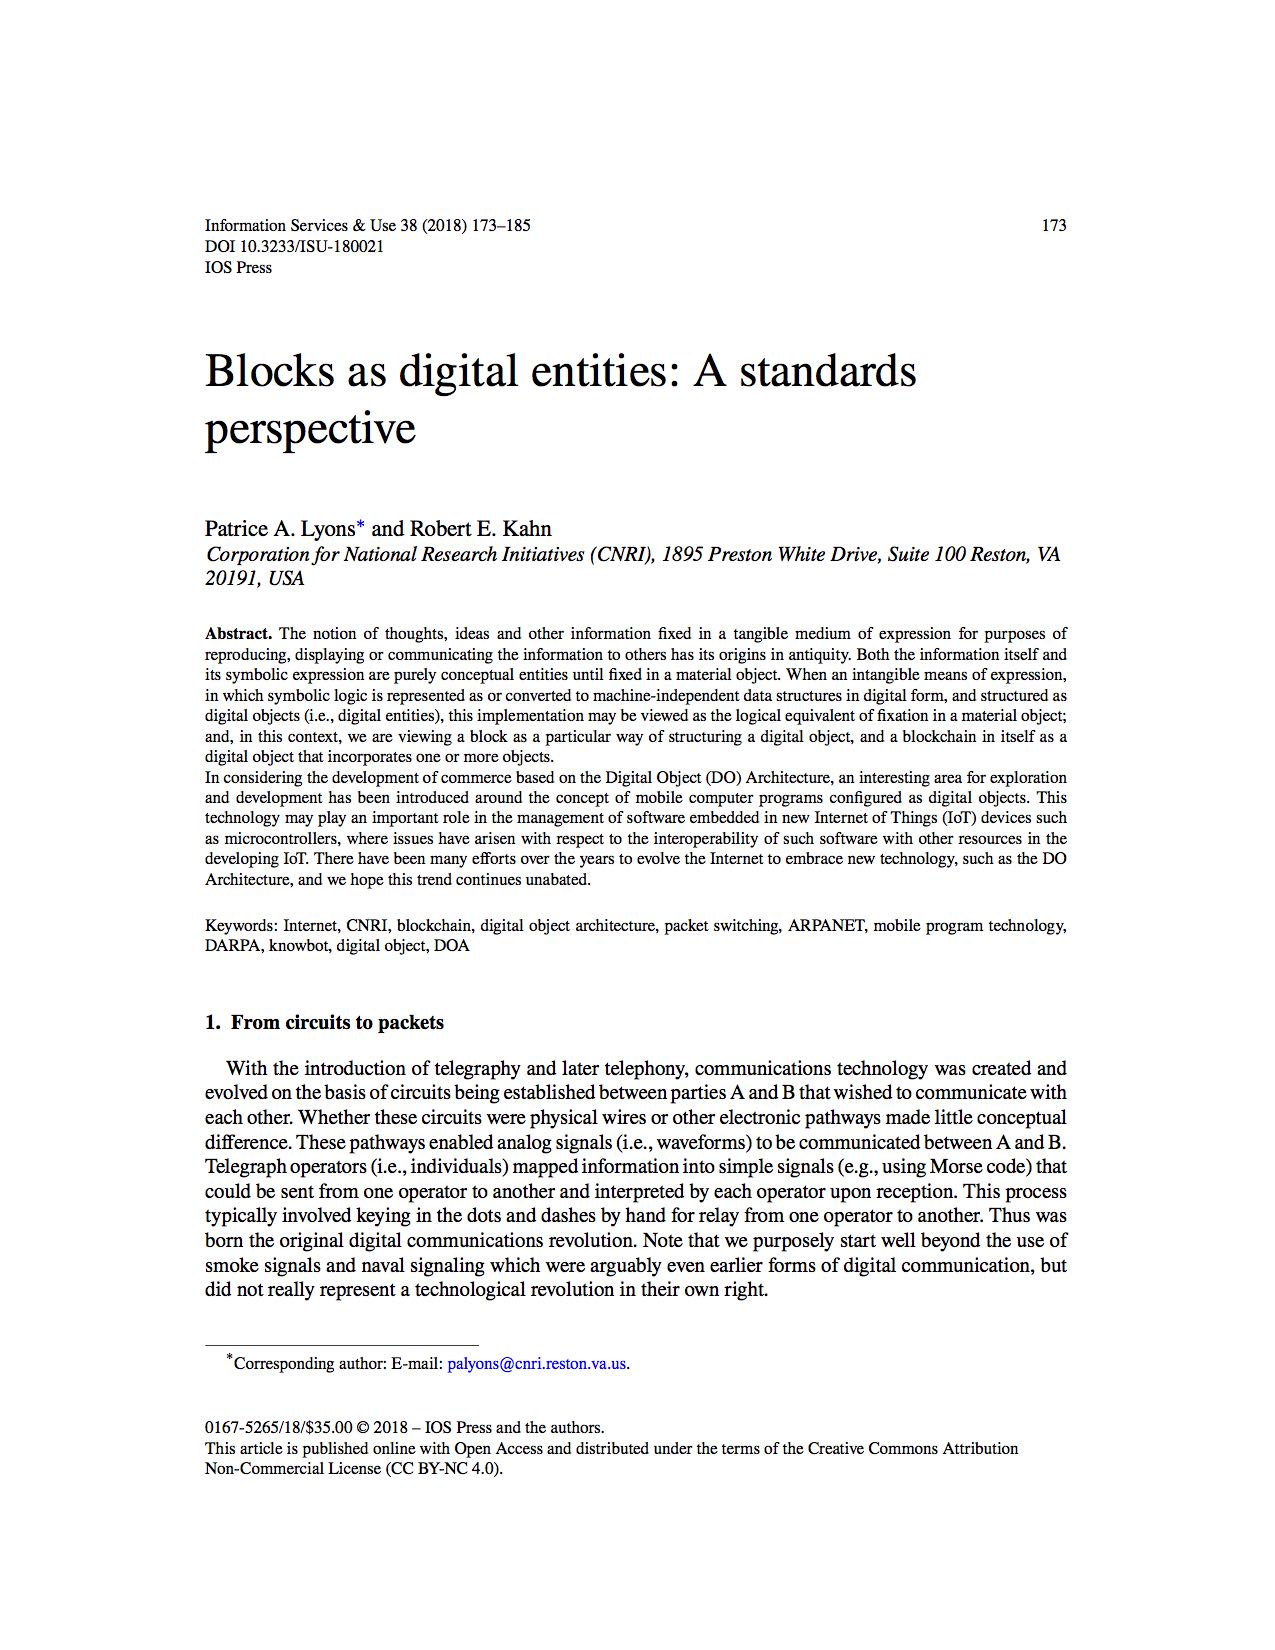 Blocks as digital entities